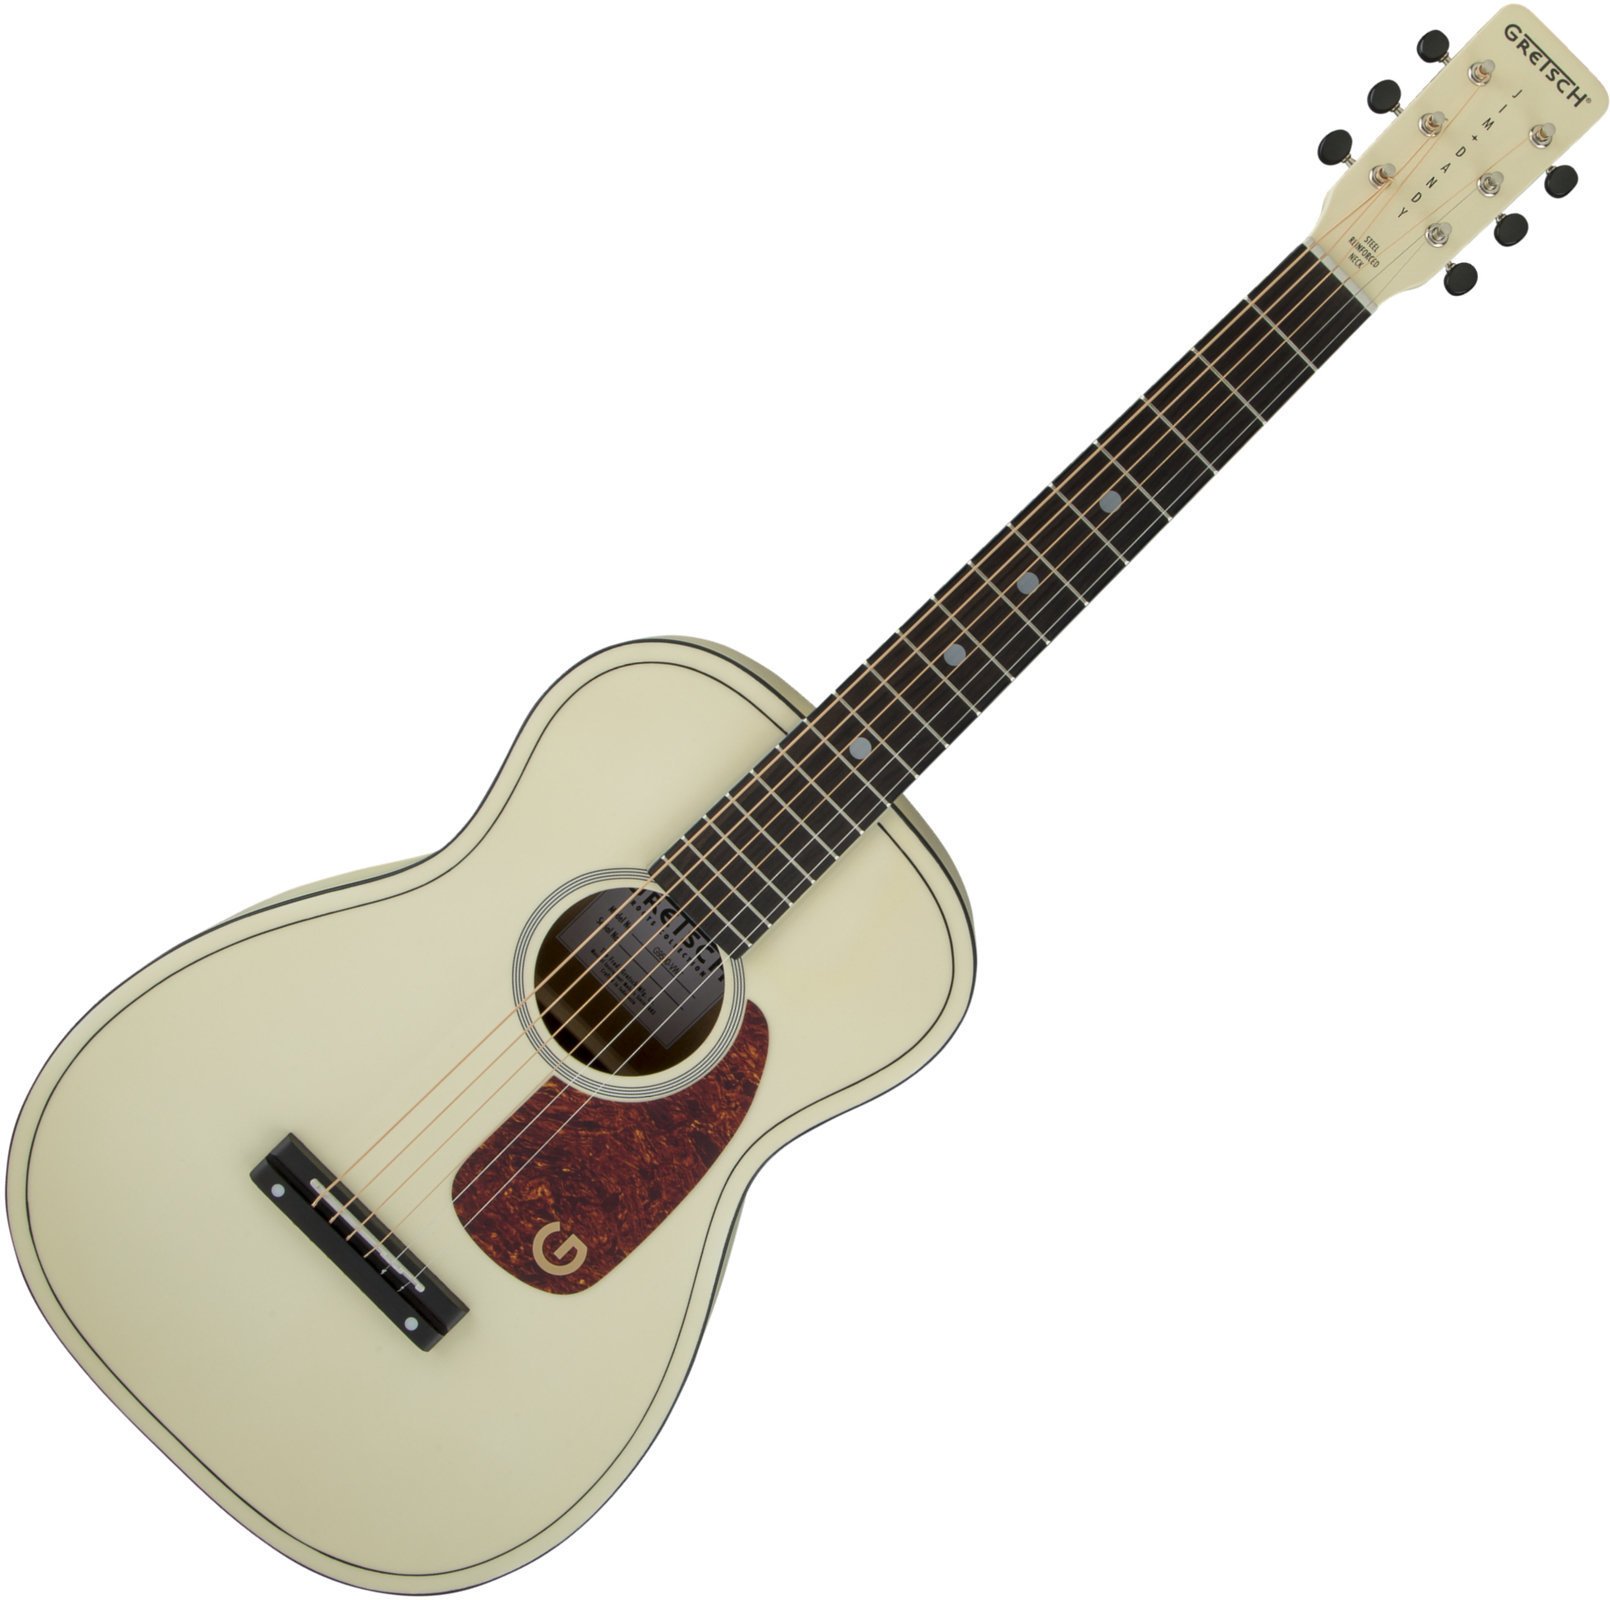 Ακουστική Κιθάρα Gretsch G9500 Jim Dandy Limited Edition Vintage White